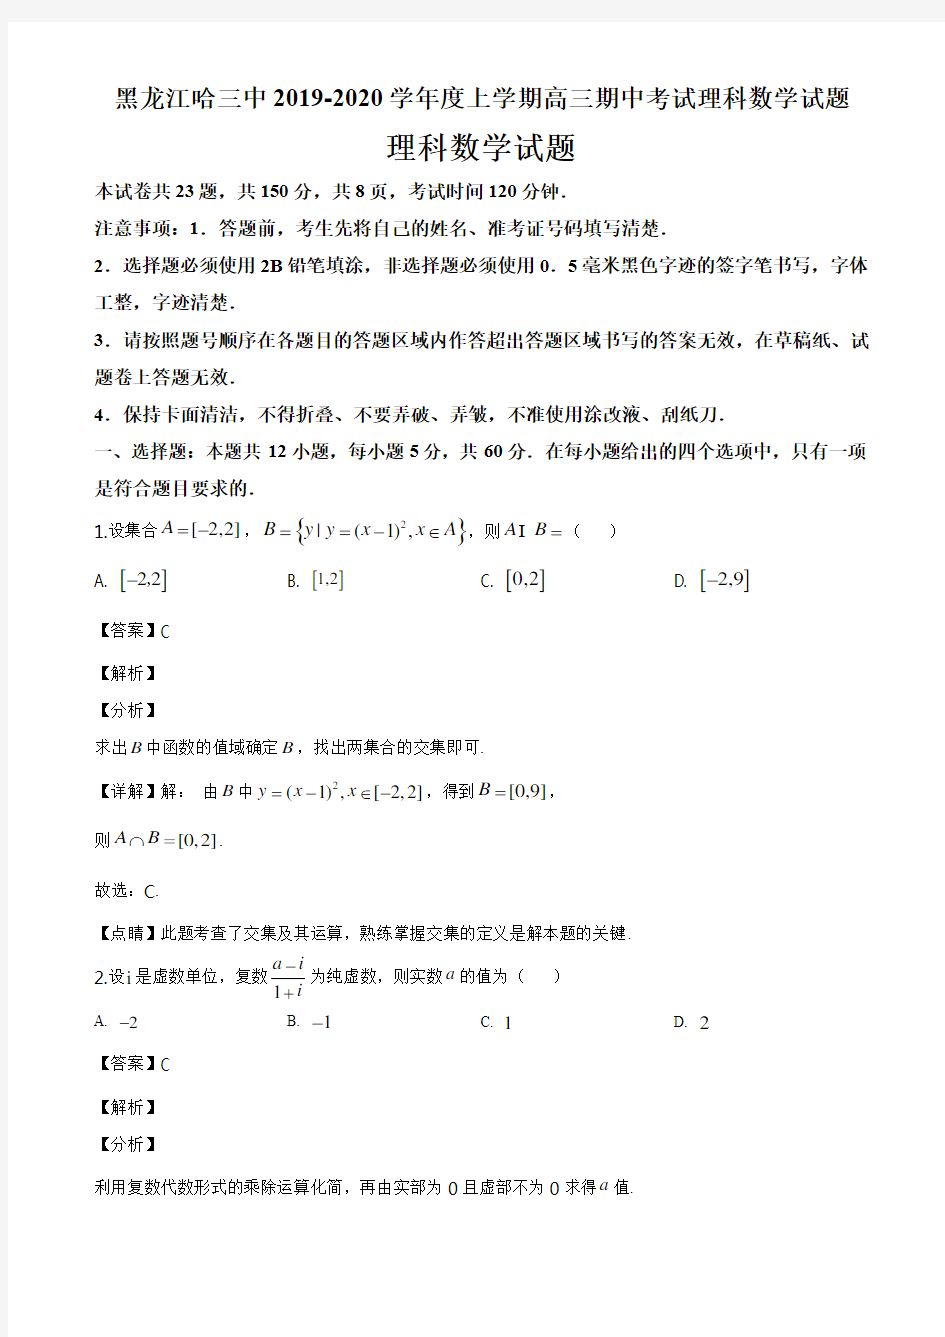 黑龙江哈三中2019-2020学年度上学期高三期中考试理科数学试题答案解析与点睛(24页)